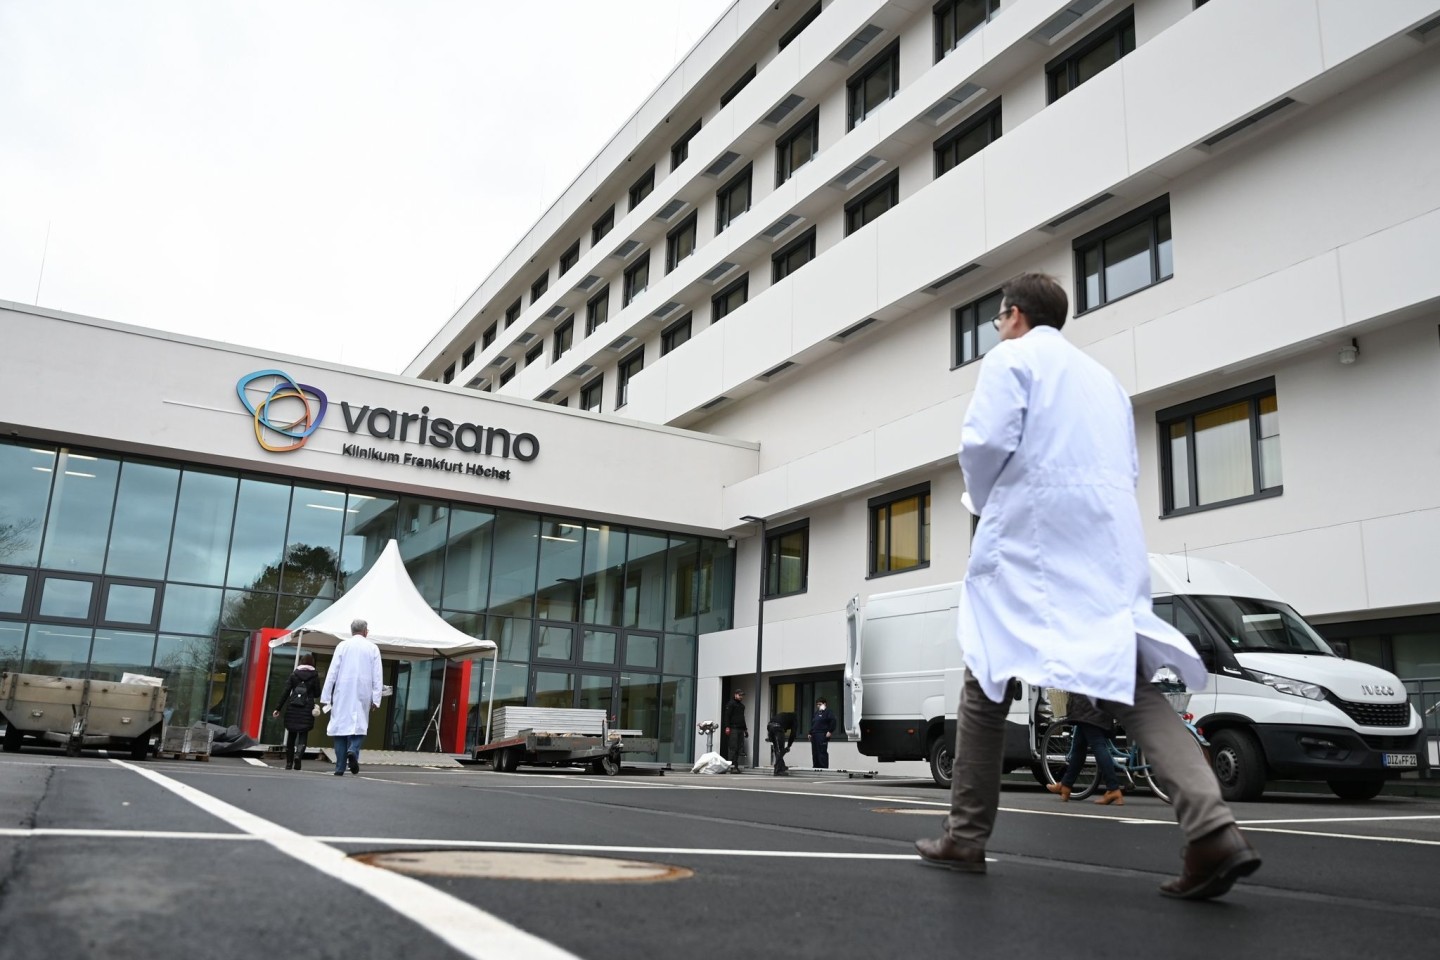 Das Varisano-Klinikum in Frankfurt ist eins von acht Krankenhäusern in Frankfurt, die «Medizinische Soforthilfe nach Vergewaltigung» anbieten.